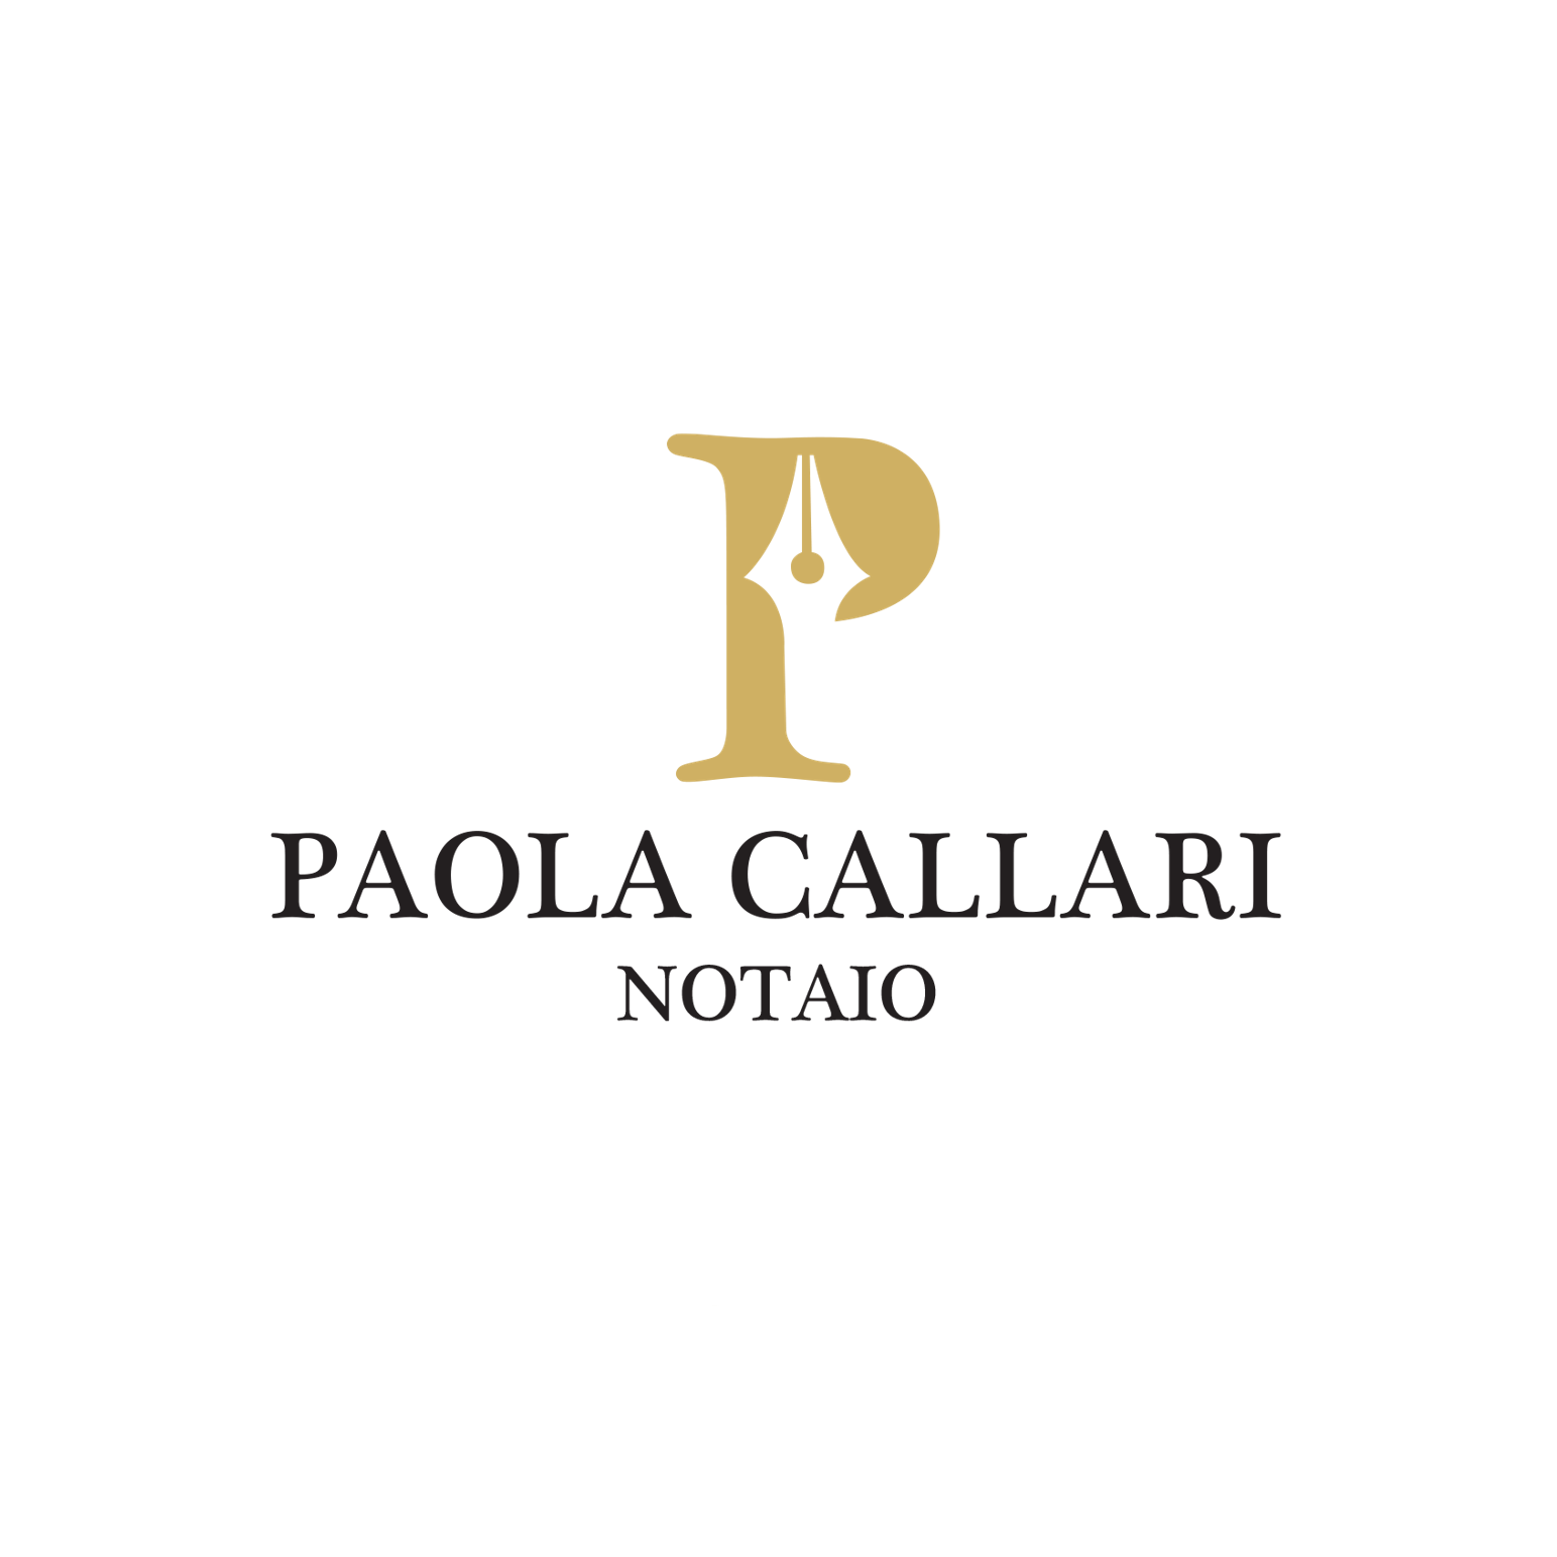 Notaio Callari Paola Torino